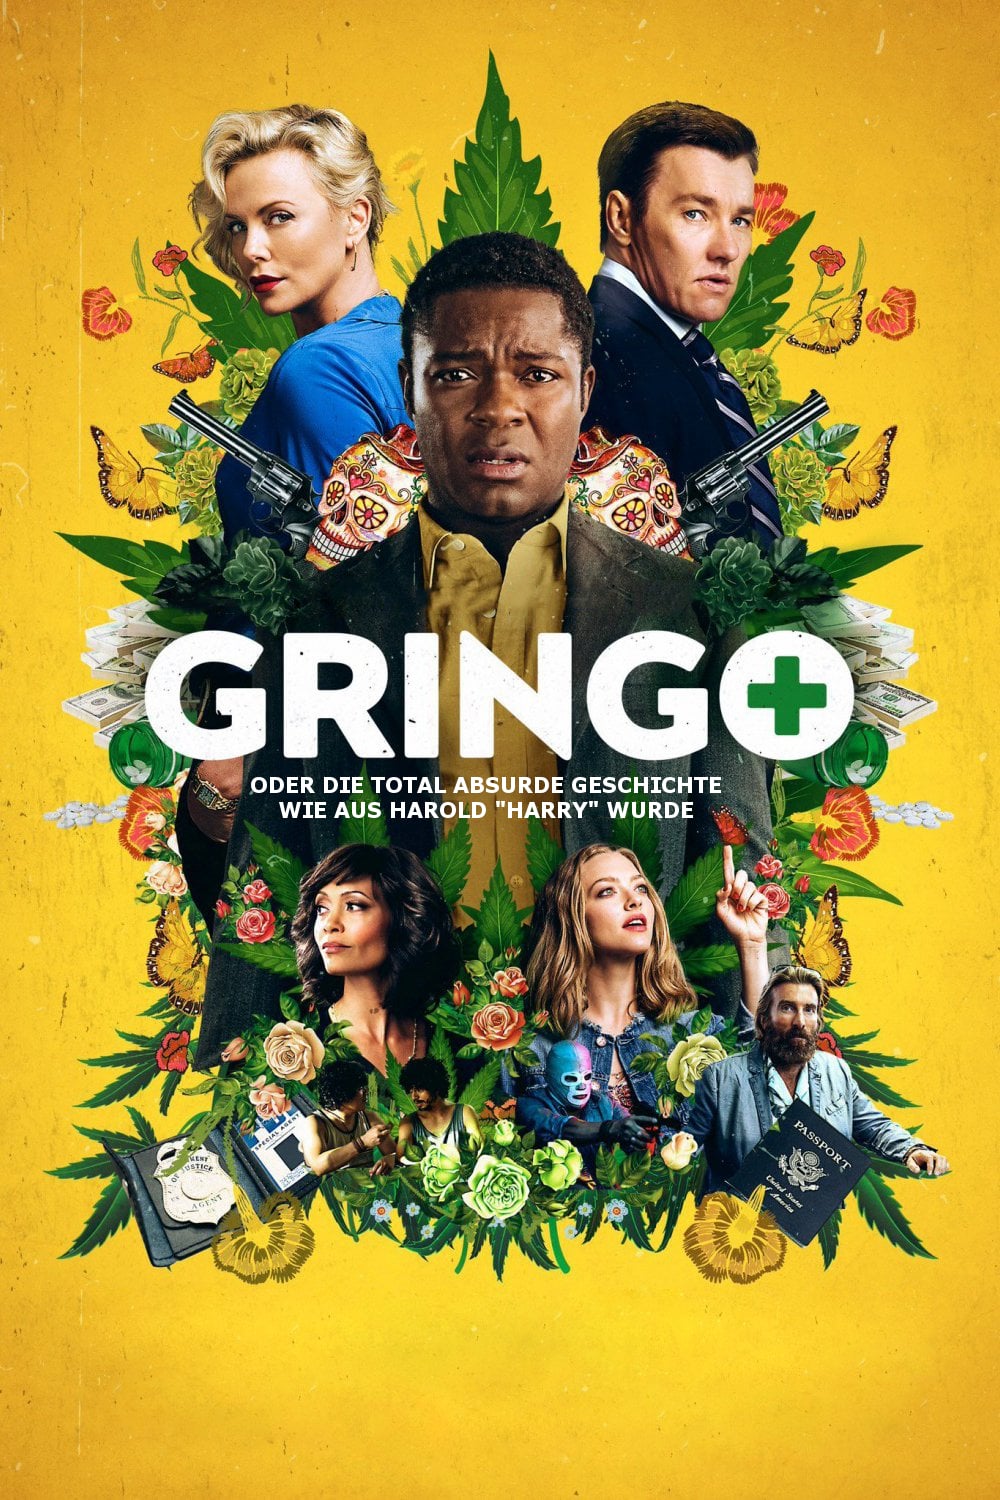 Plakat von "Gringo"